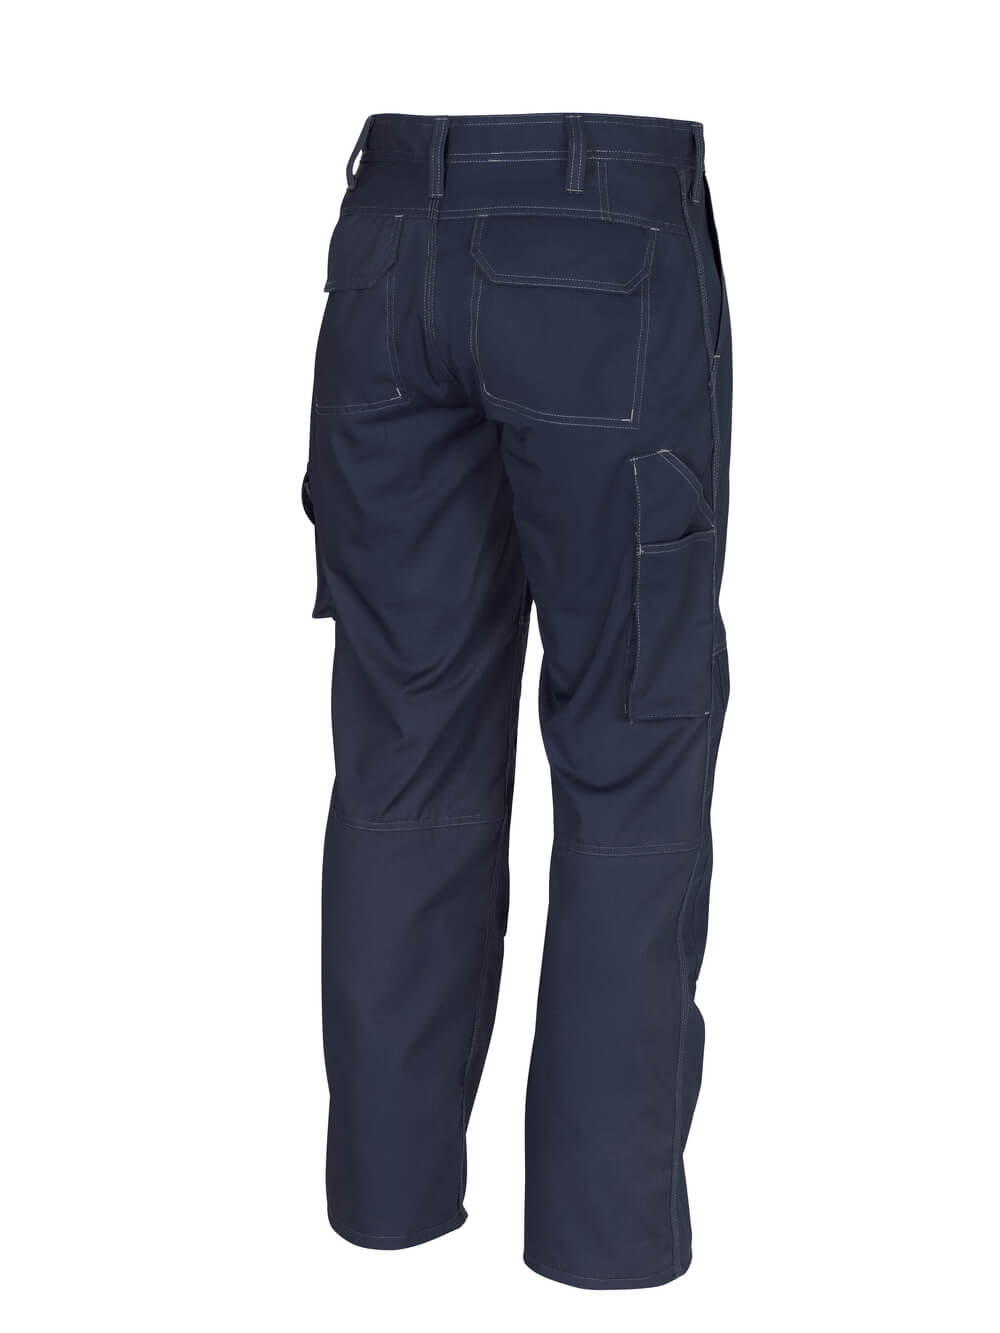 MASCOT® INDUSTRY Hose mit Knietaschen »Biloxi« Gr. 76/C46, schwarzblau - kommt direkt von HUG Technik 😊